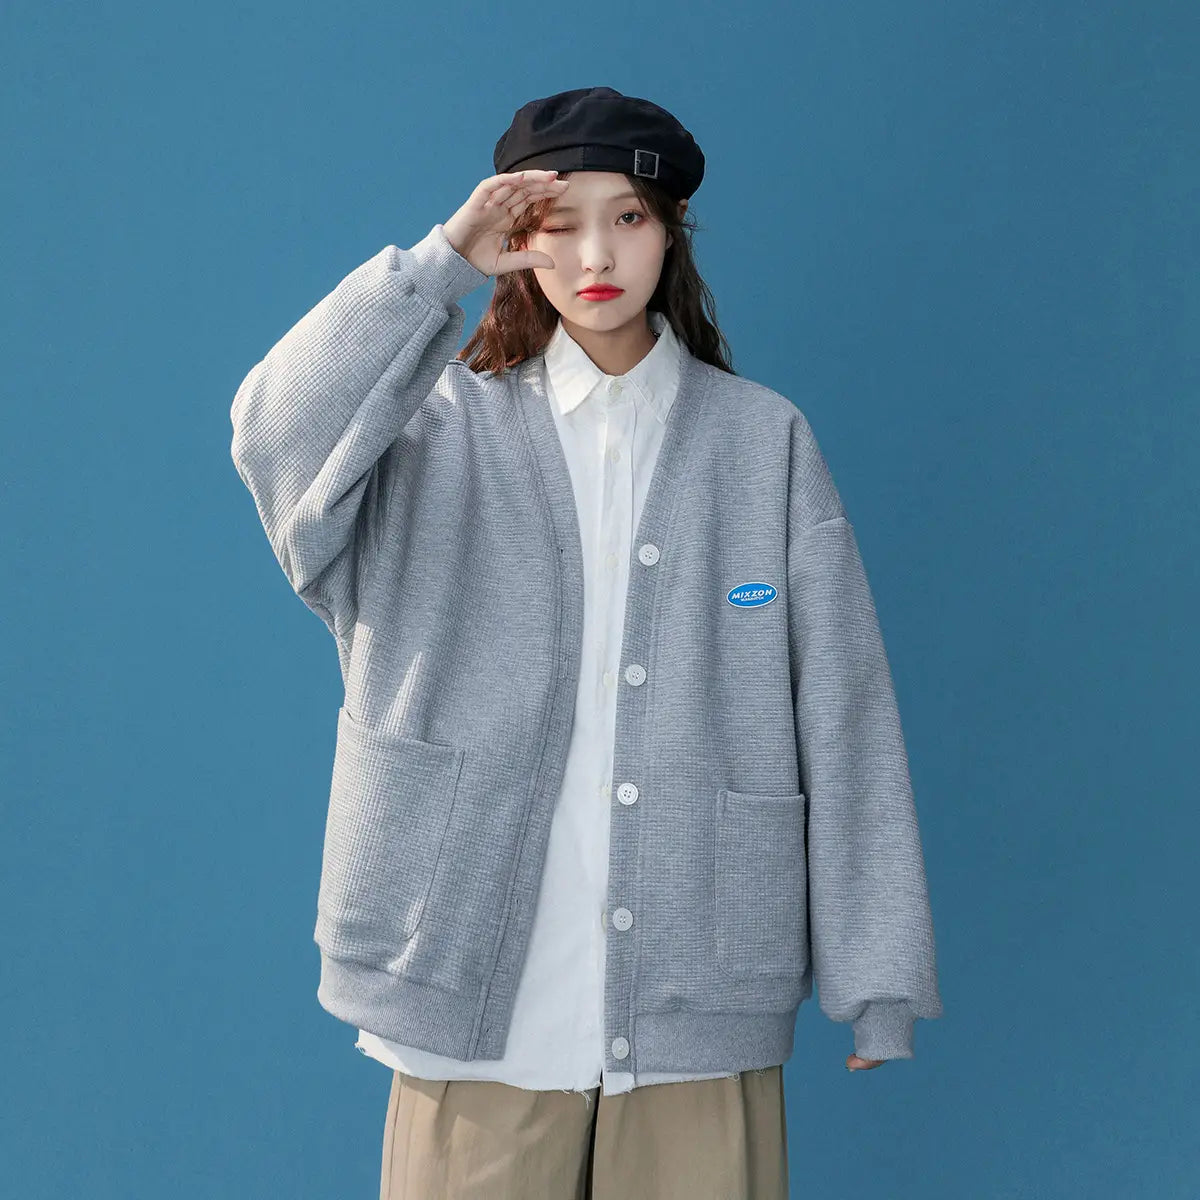 Lovemi – Studentin am Nischen-Design-Sense-College im koreanischen Stil